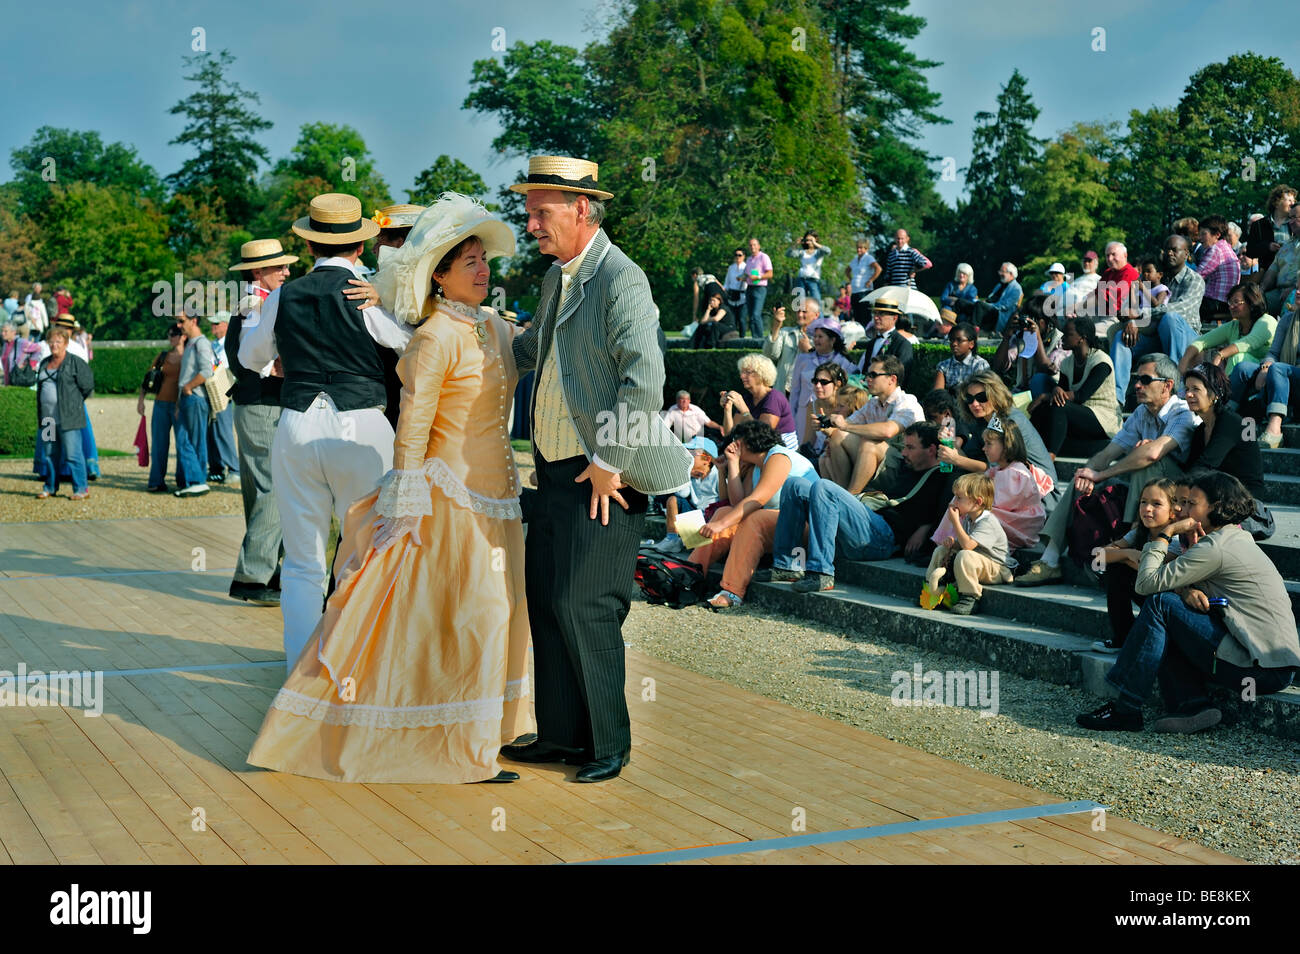 Paris, France - public de touristes regardant un bal, vêtu d'un costume d'époque, d'une robe de fantaisie, de couples français dansant, de chapeaux de femmes, de vieux hommes, groupe Banque D'Images